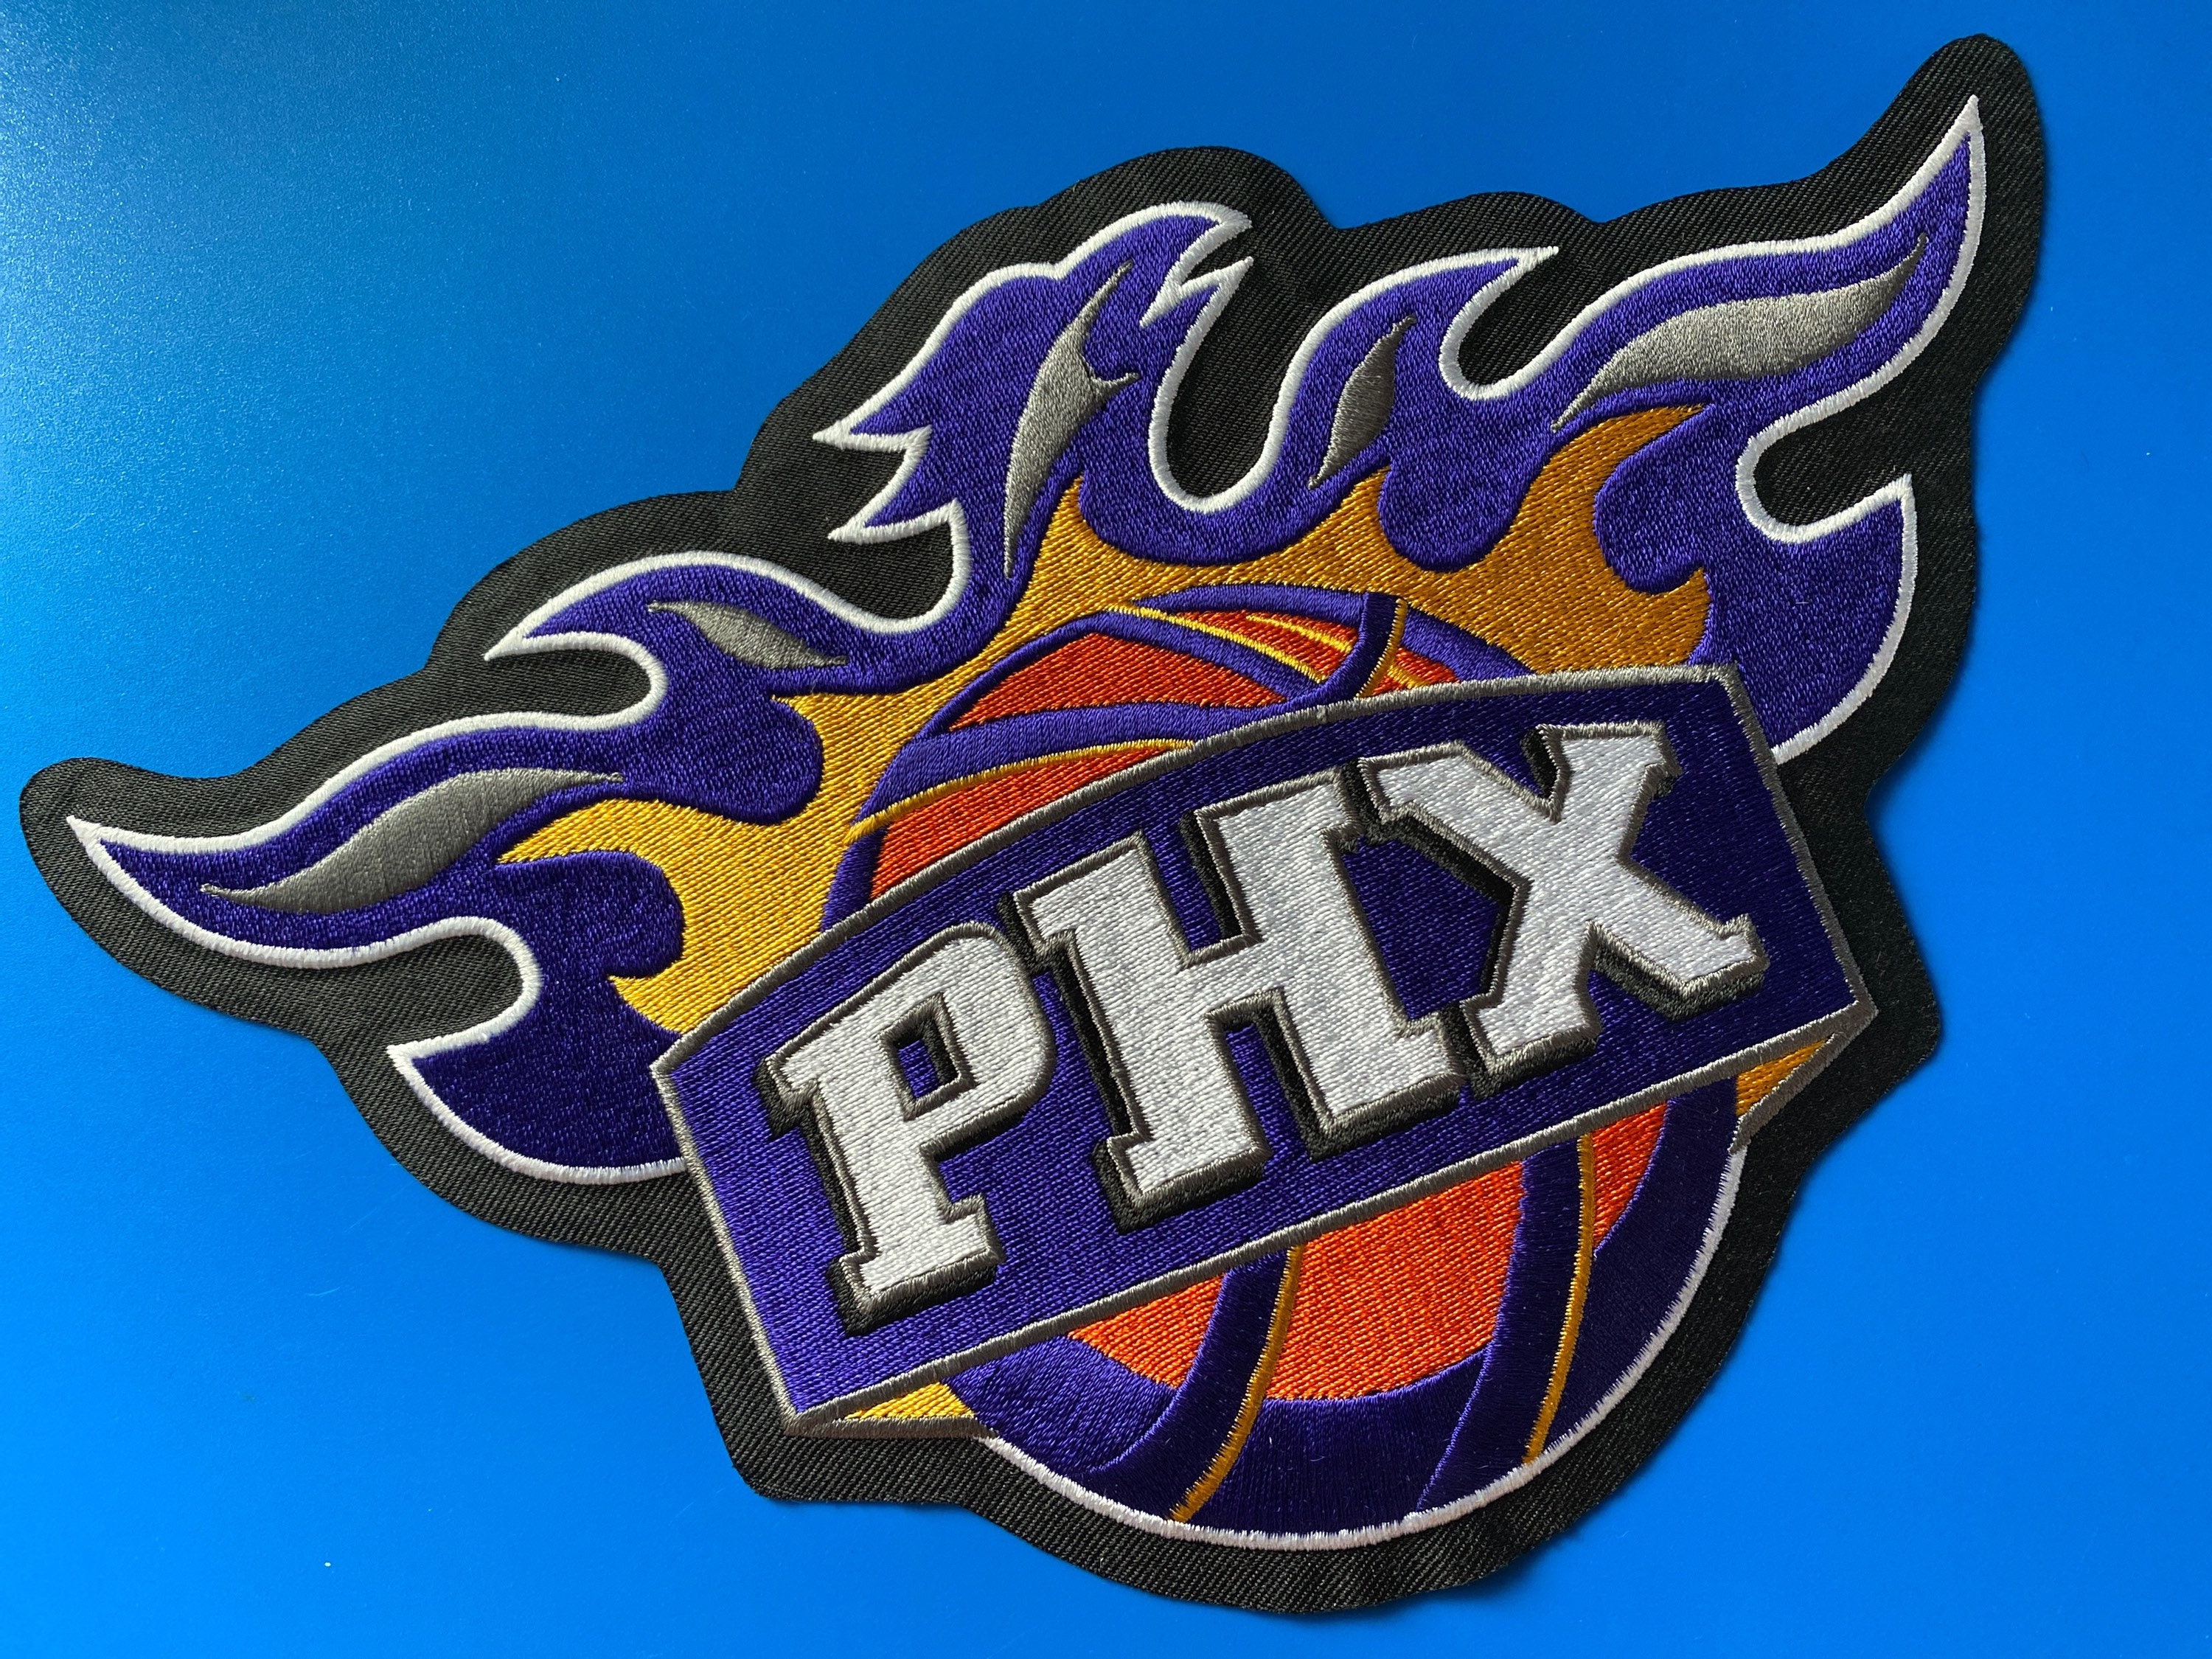 Phoenix Suns Players Stitched Jersey - Patch 6 - Vgear